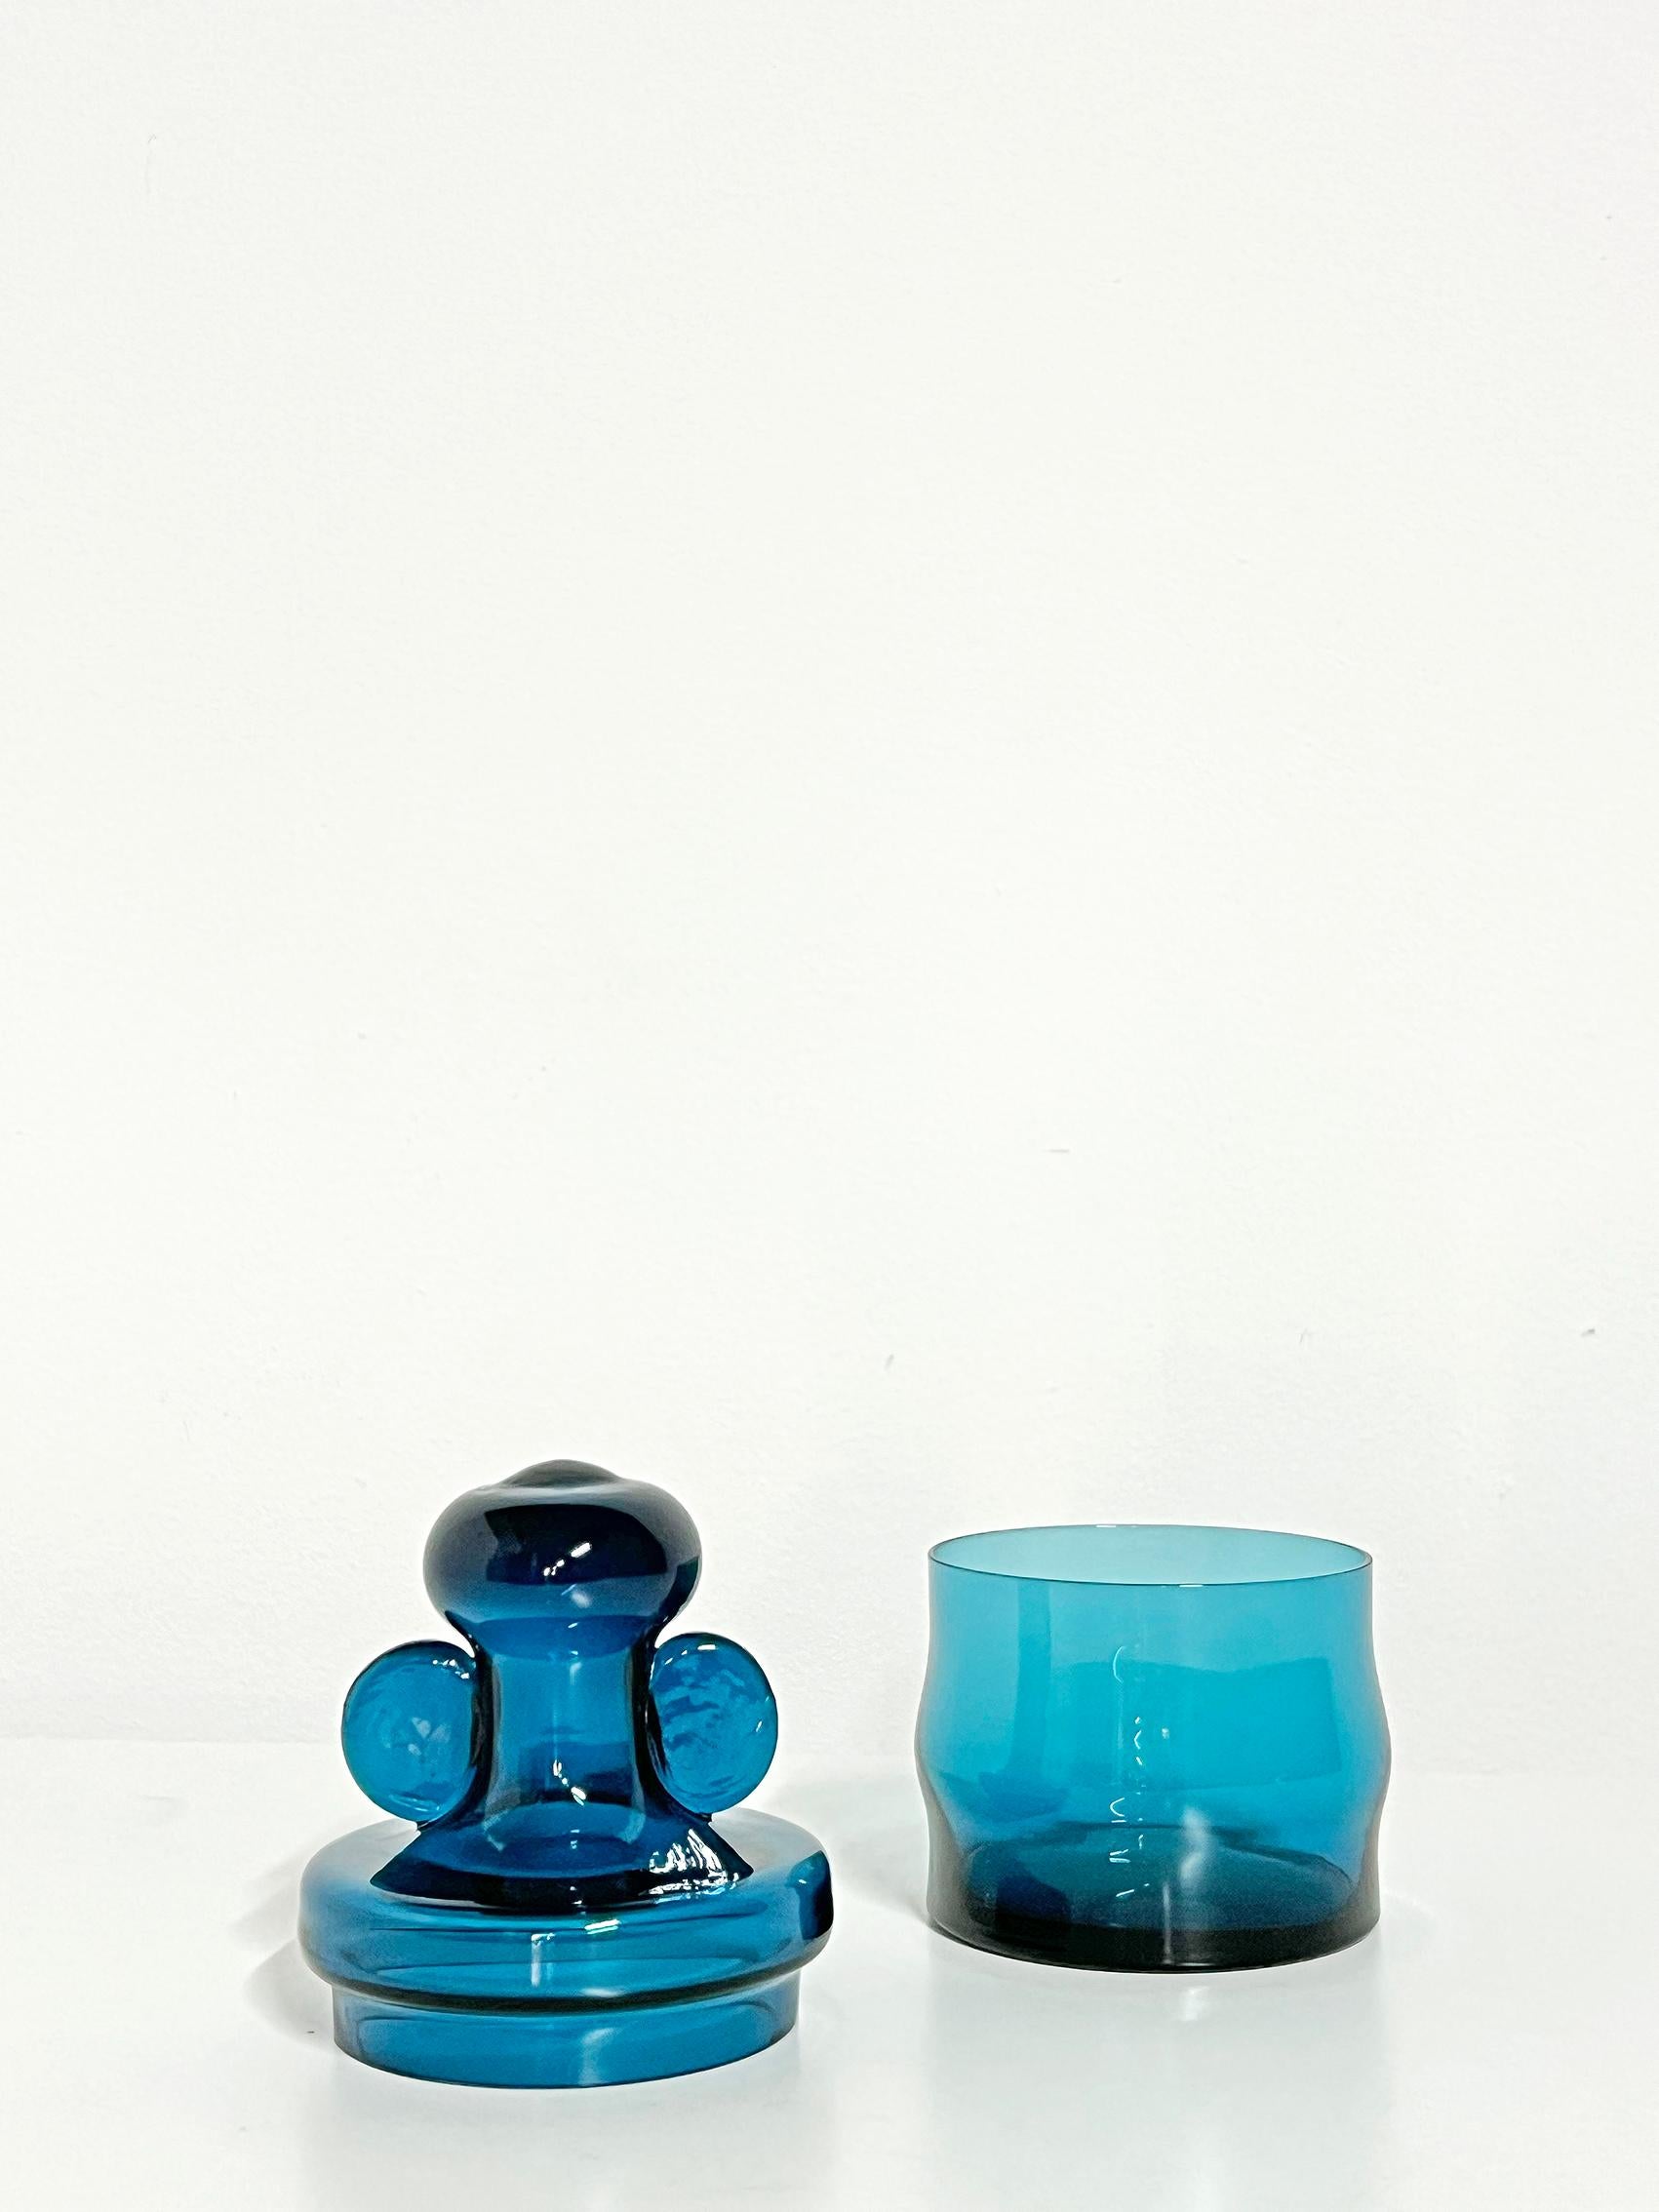 Mid-20th Century Scandinavian Modern Jar in Glass By Bertil Vallien For Boda/Åfors 1960s